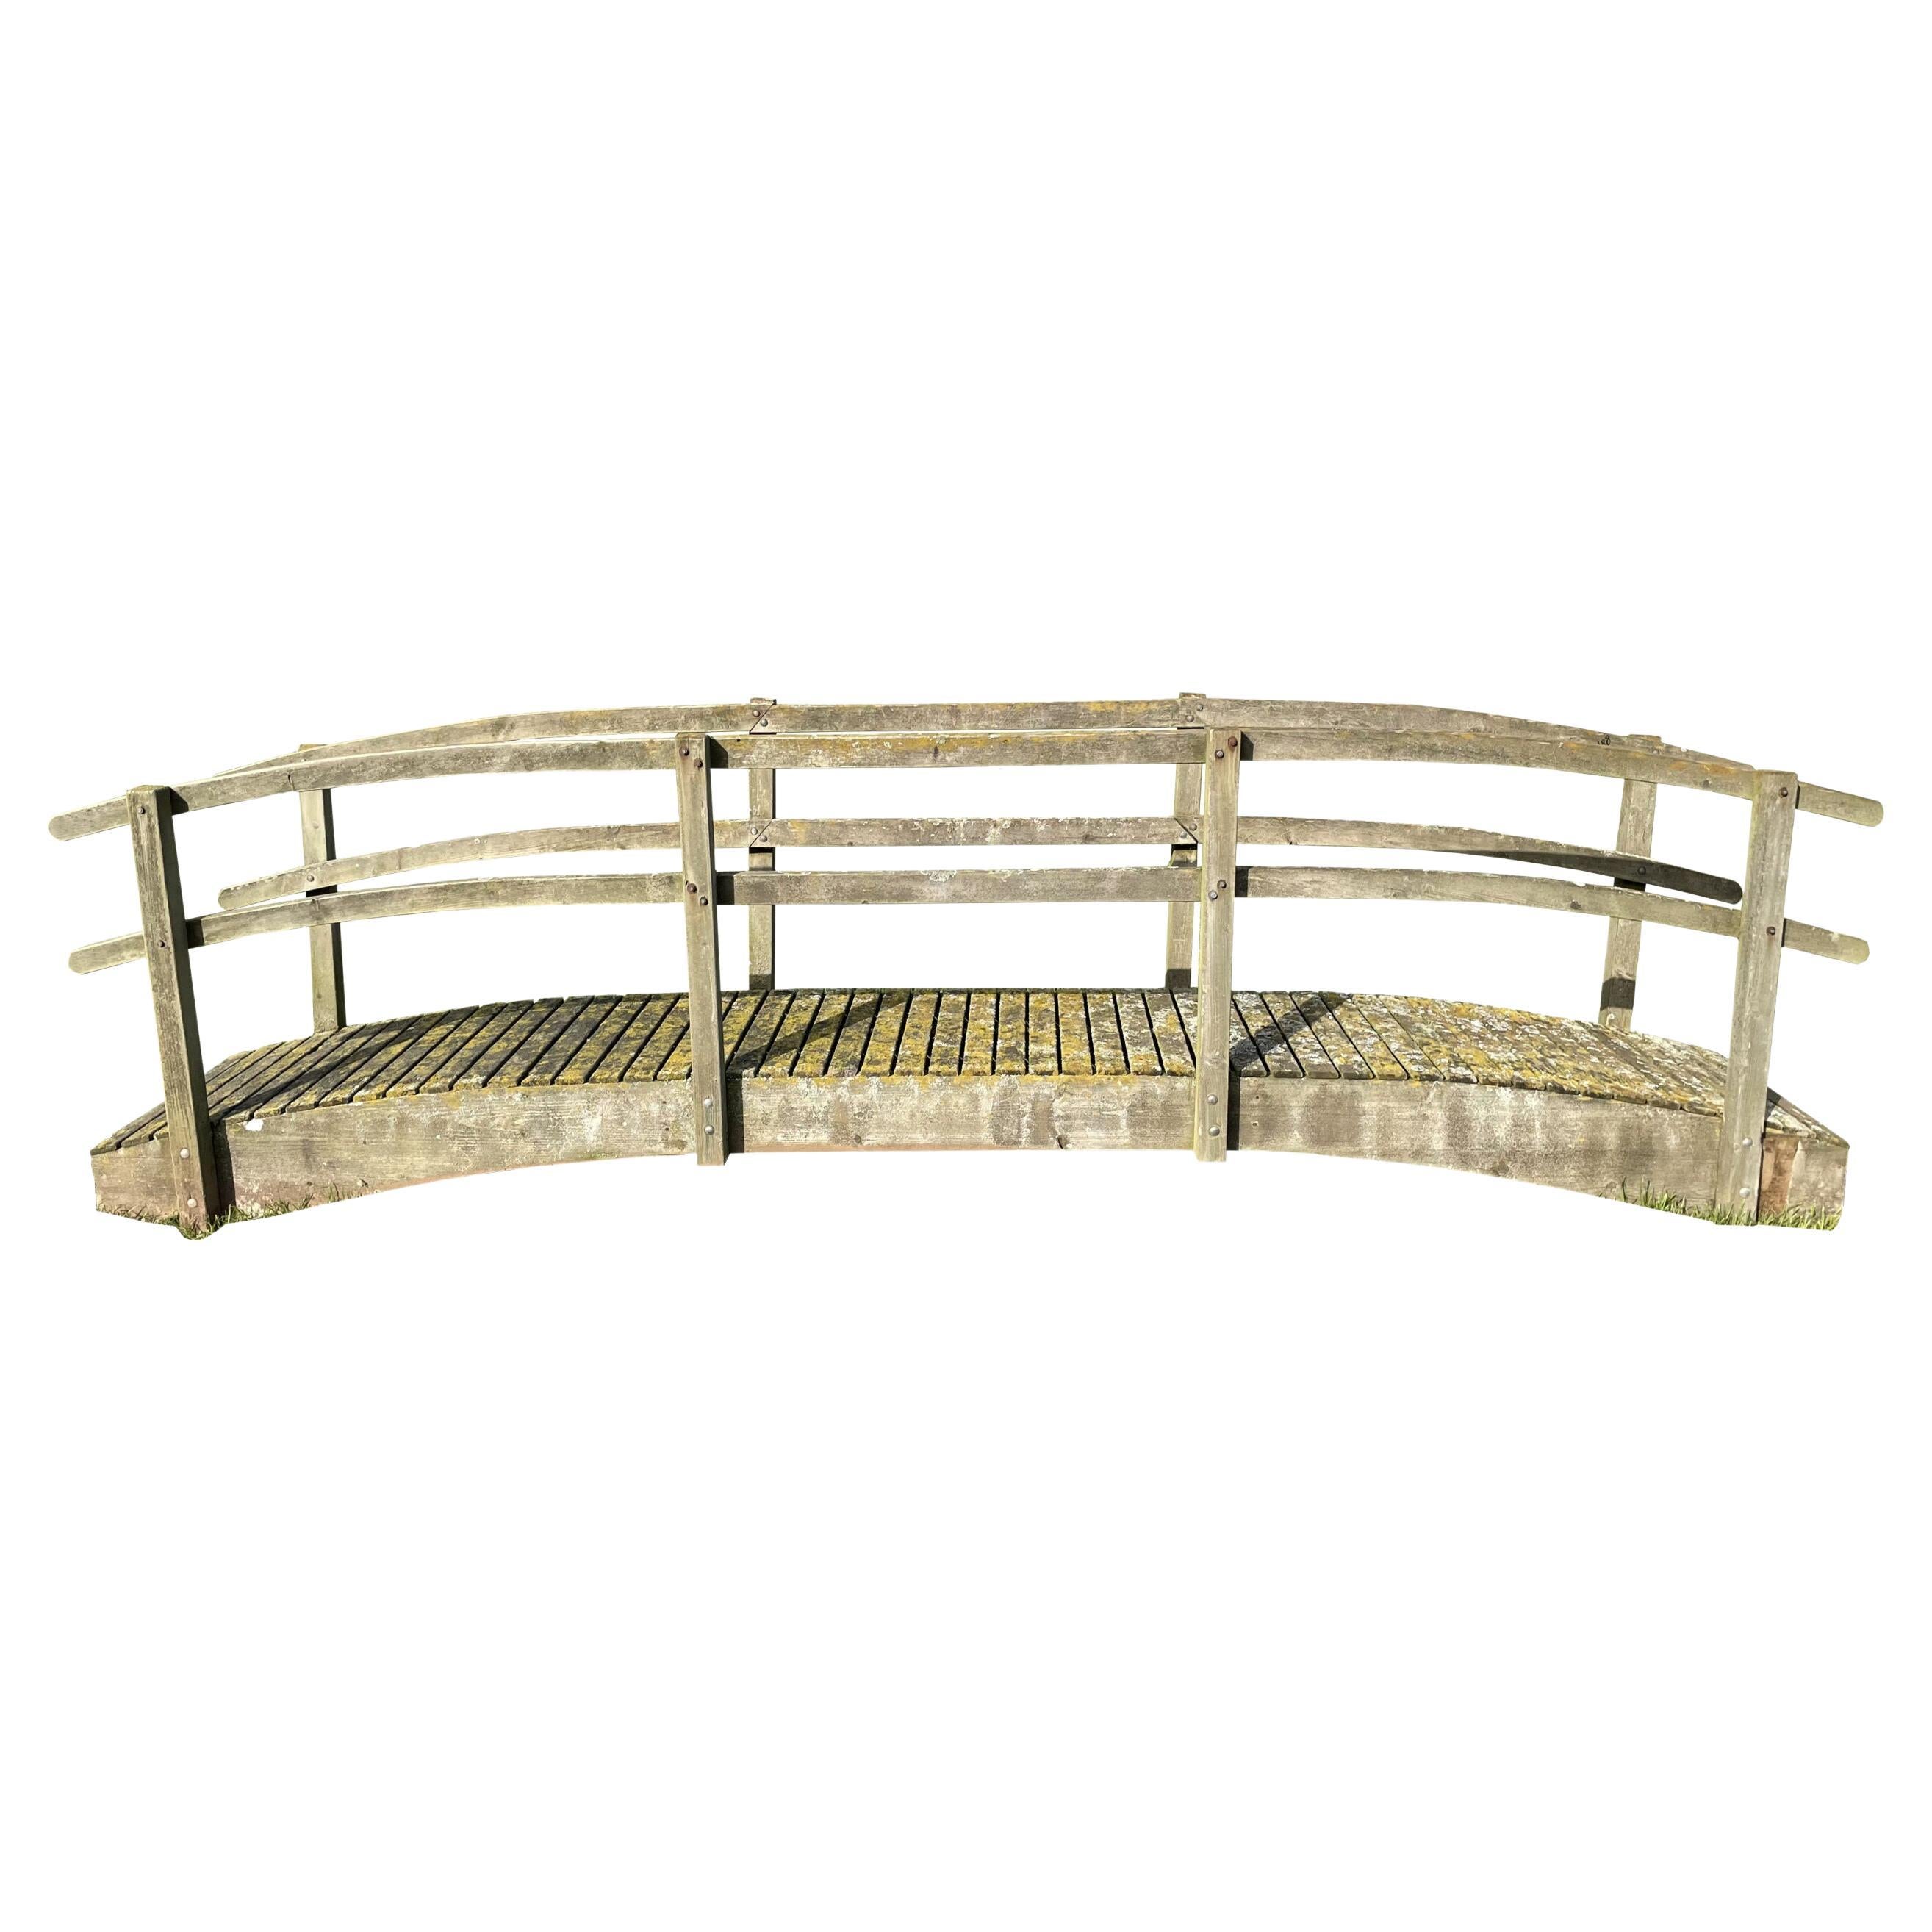 Reclaimed Wooden Garden Footbridge For Sale